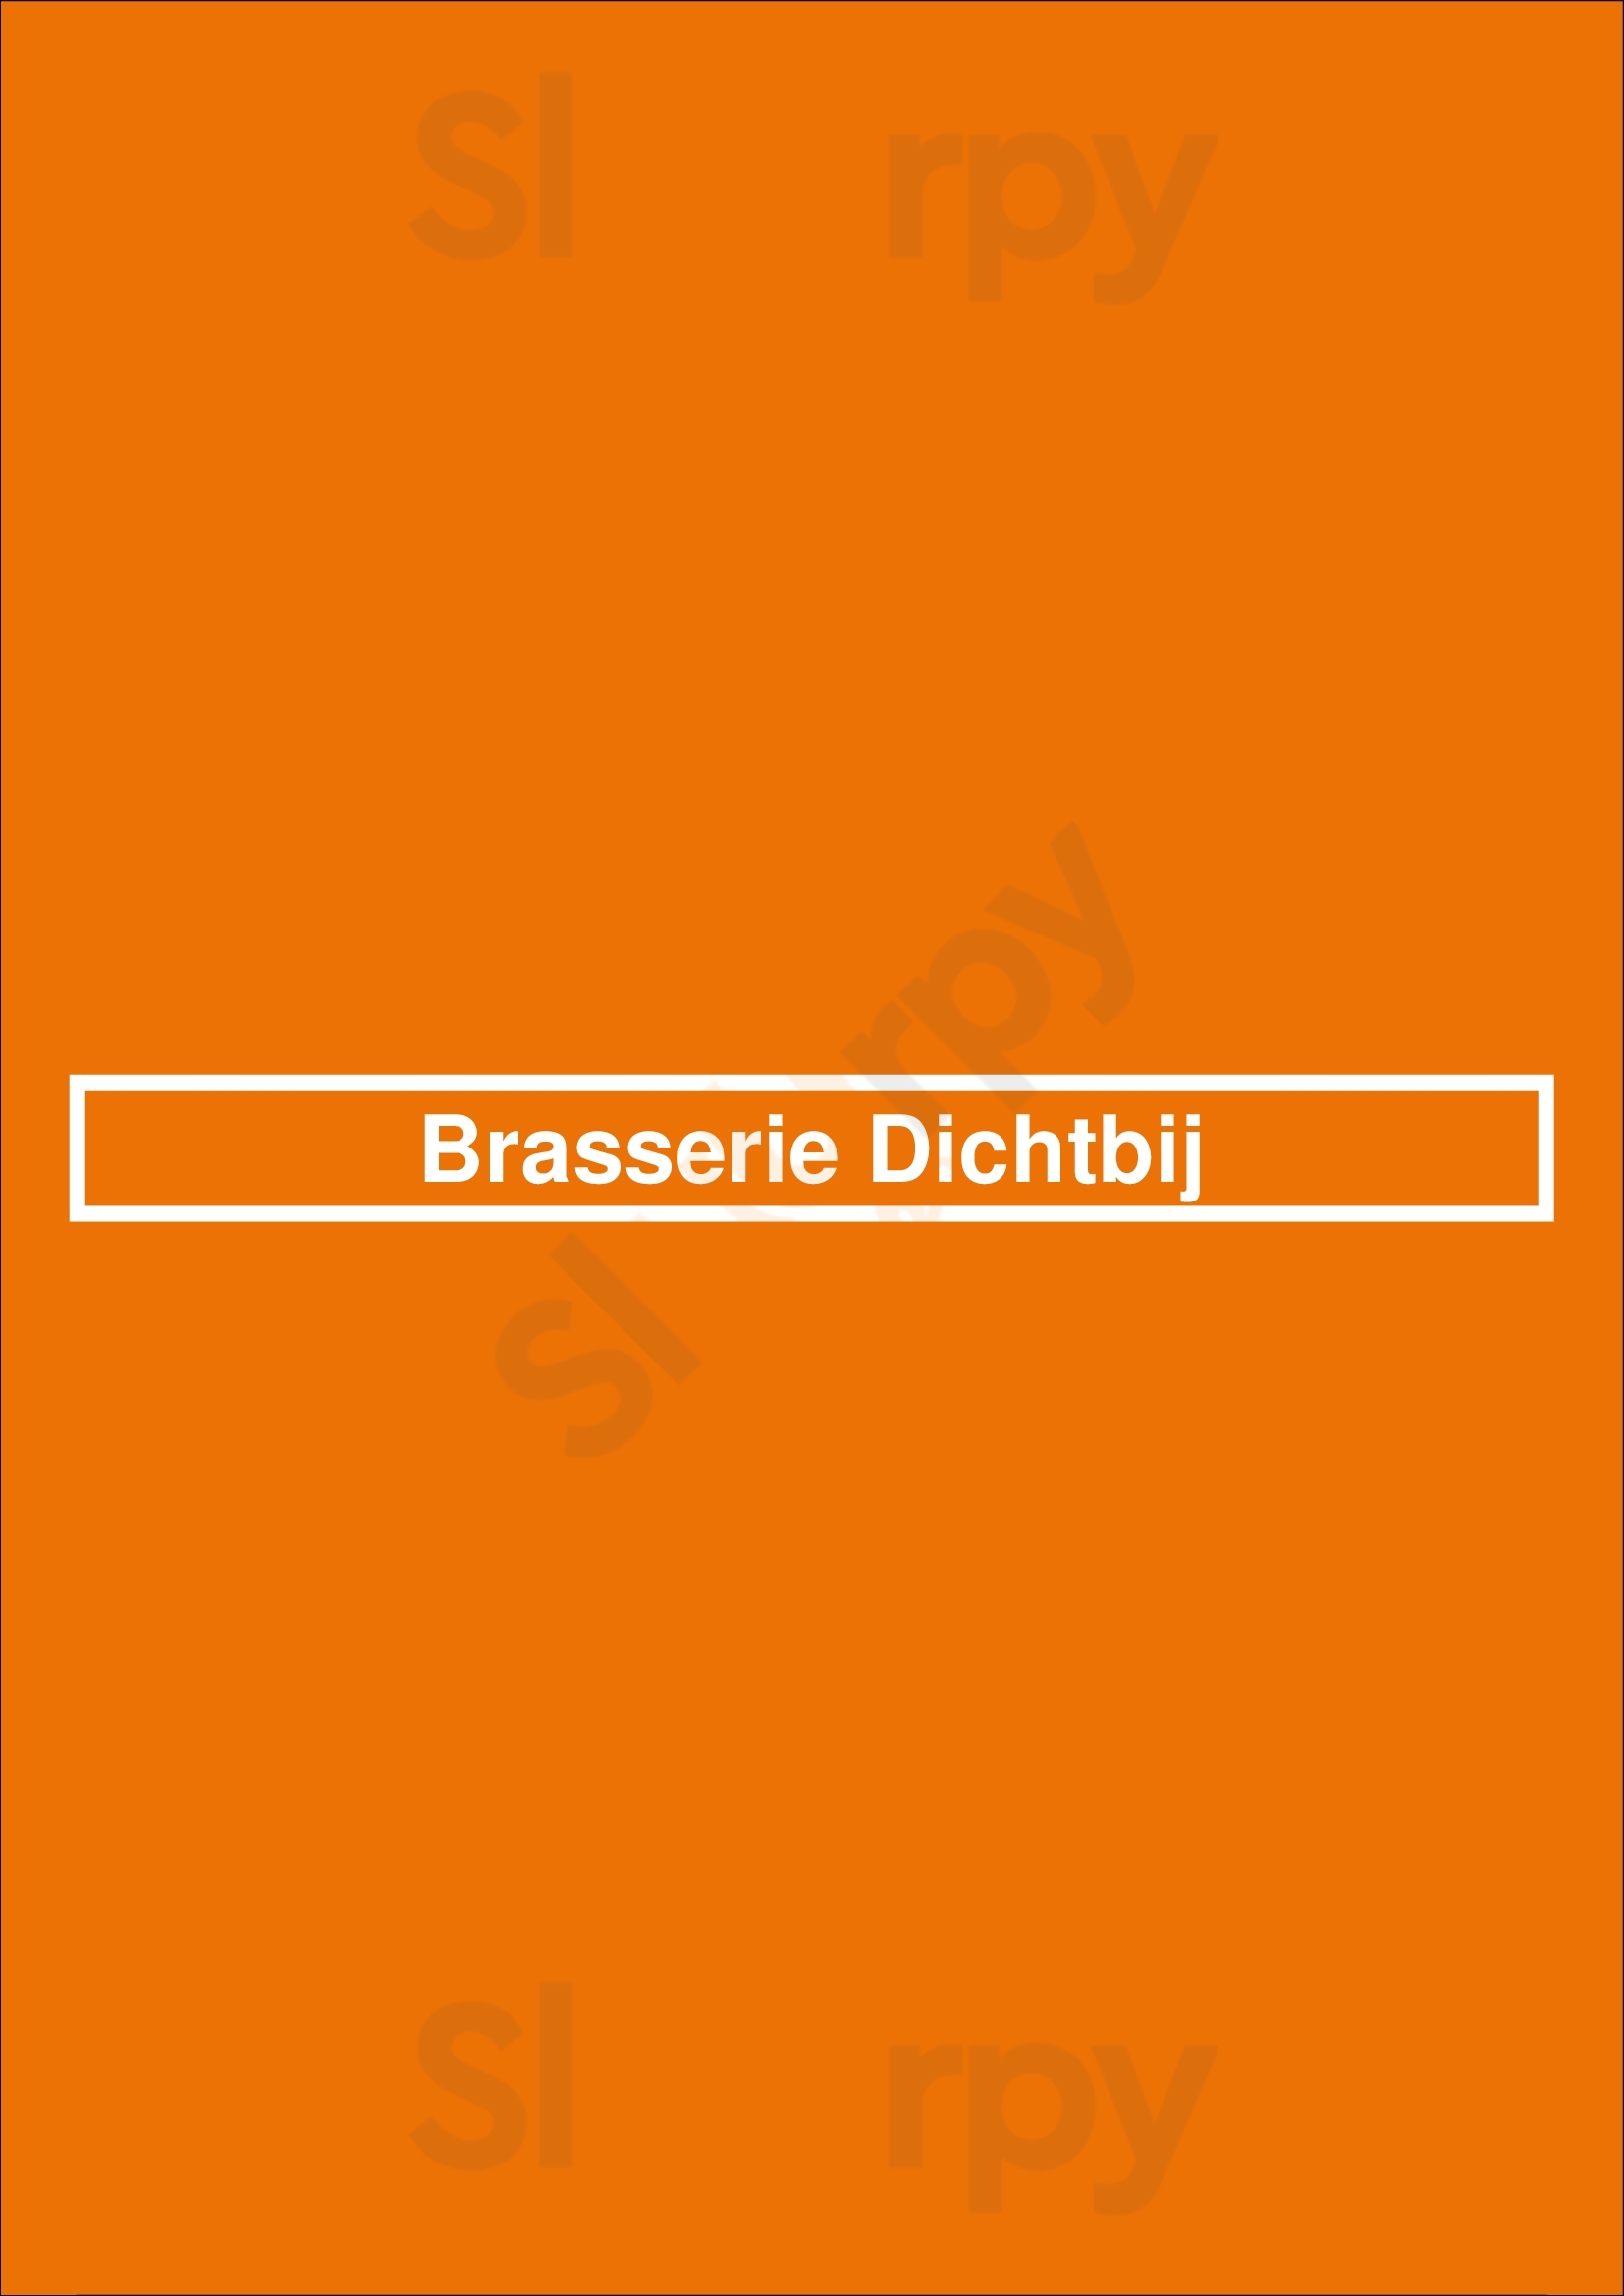 Brasserie Dichtbij Amersfoort Menu - 1